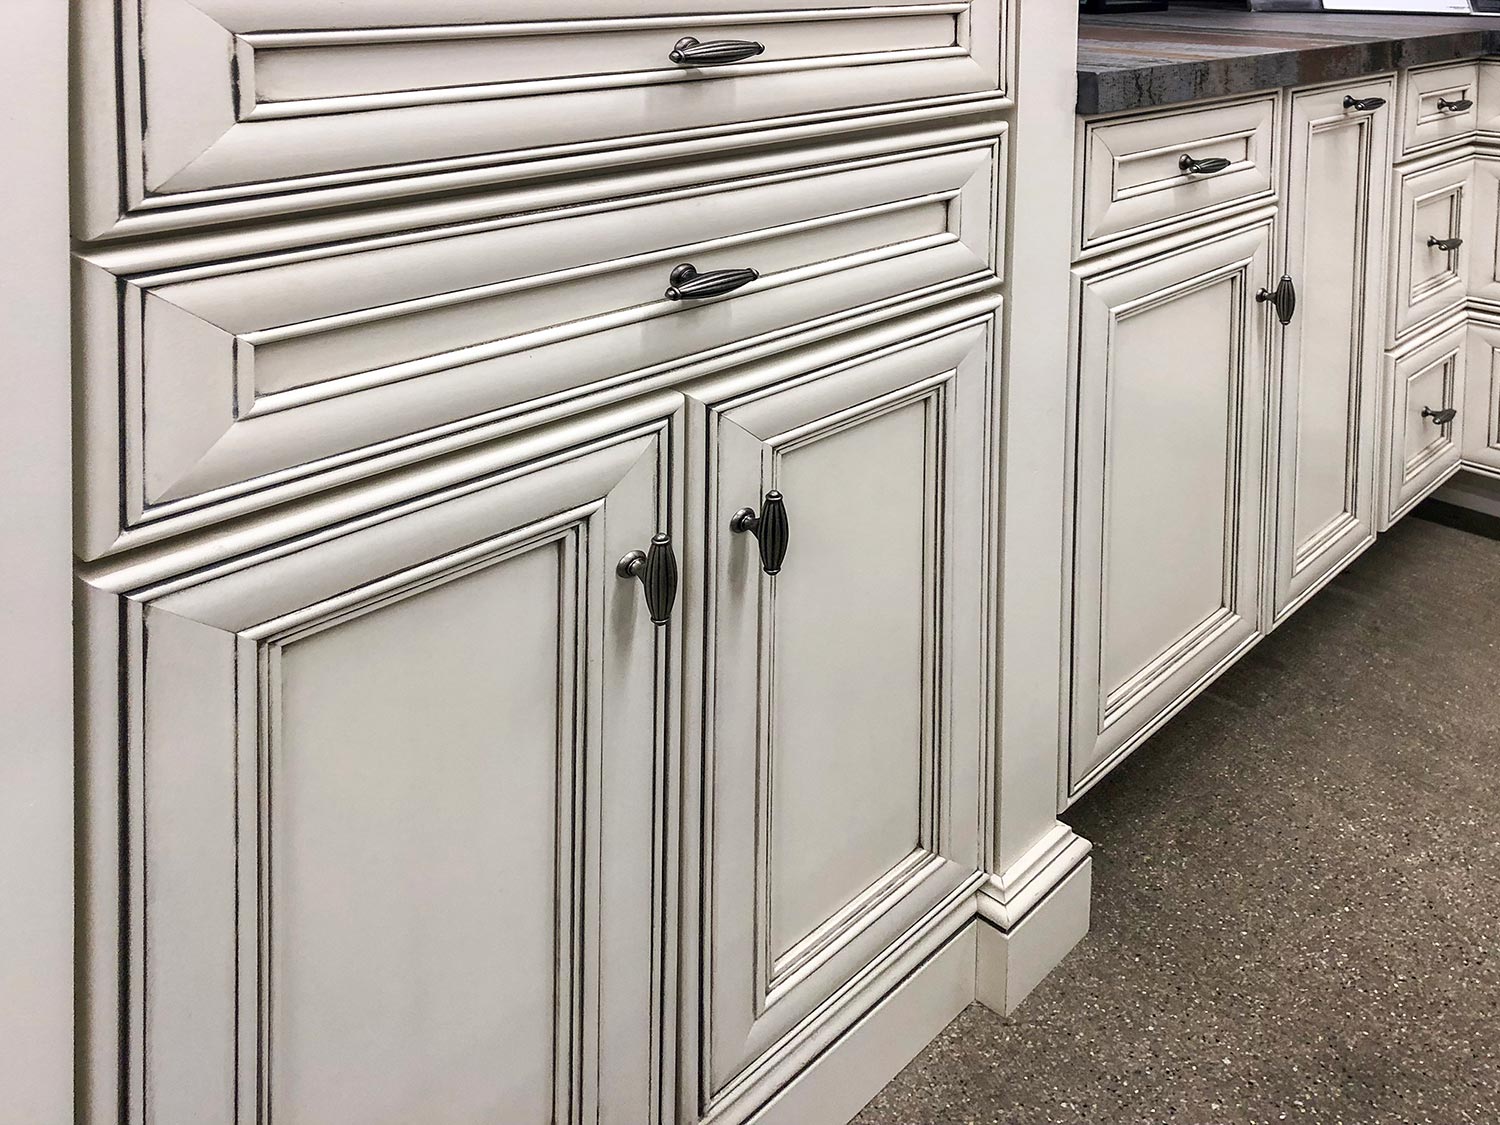 Kitchen cabinets in white cream color